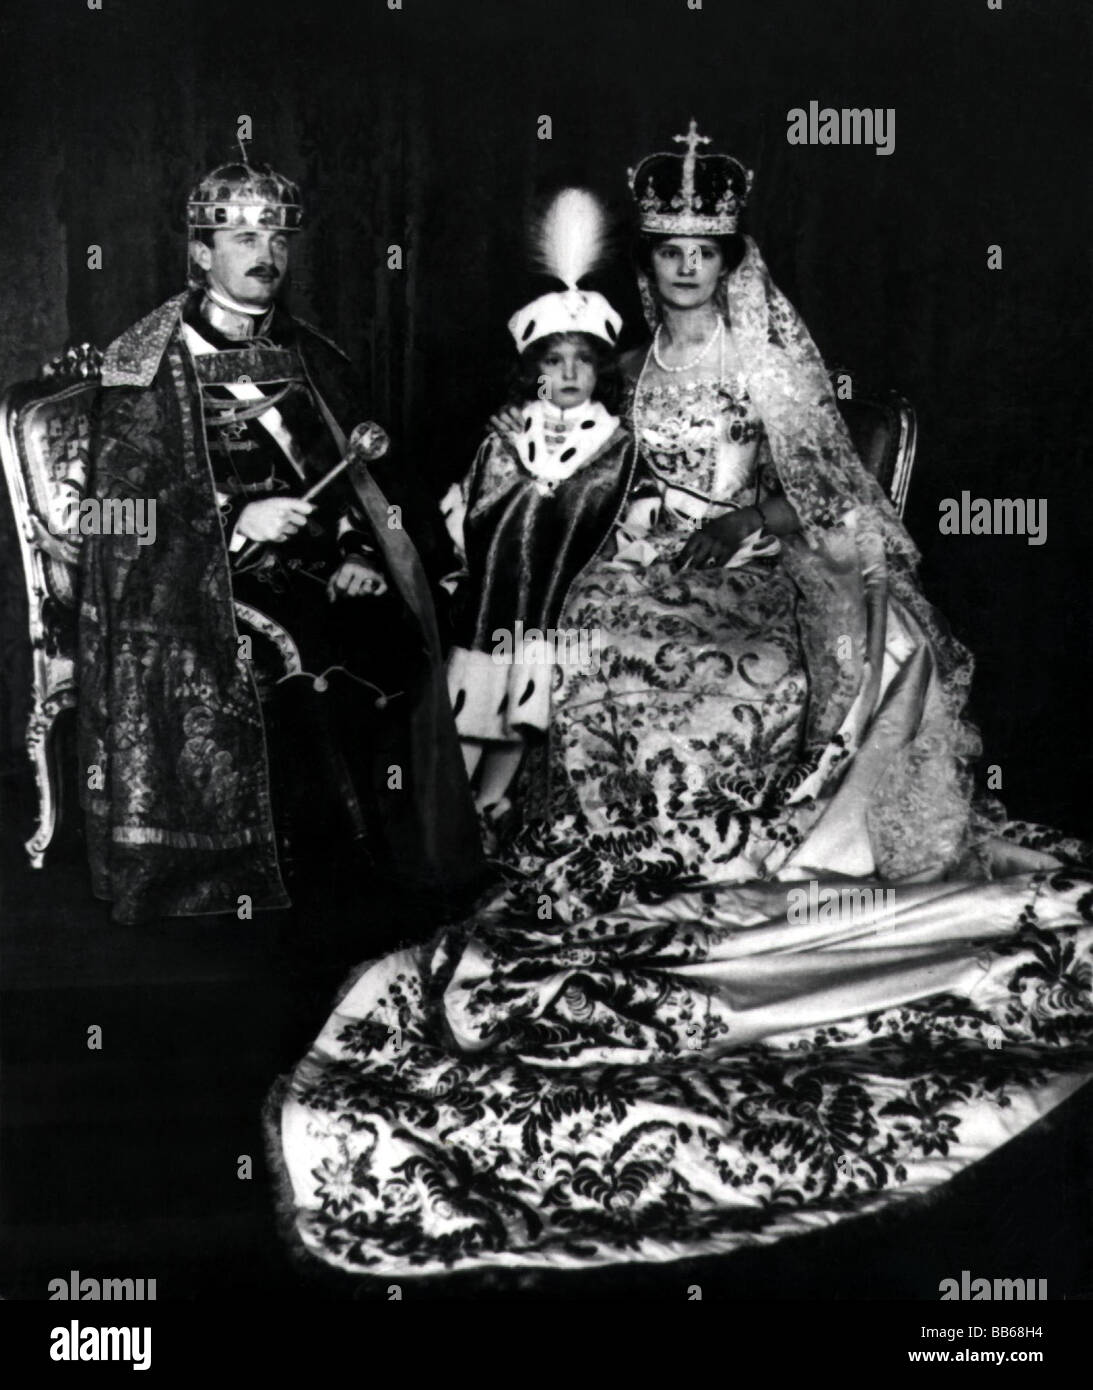 Carlo i, 17.8.1887 - 1.4.1922, Imperatore d'Austria 1916 - 1918, a mezza lunghezza, con sua moglie Zita di Borbone-Parma, chiusa e posseduta come re d'Ungheria, circa 1916, Foto Stock